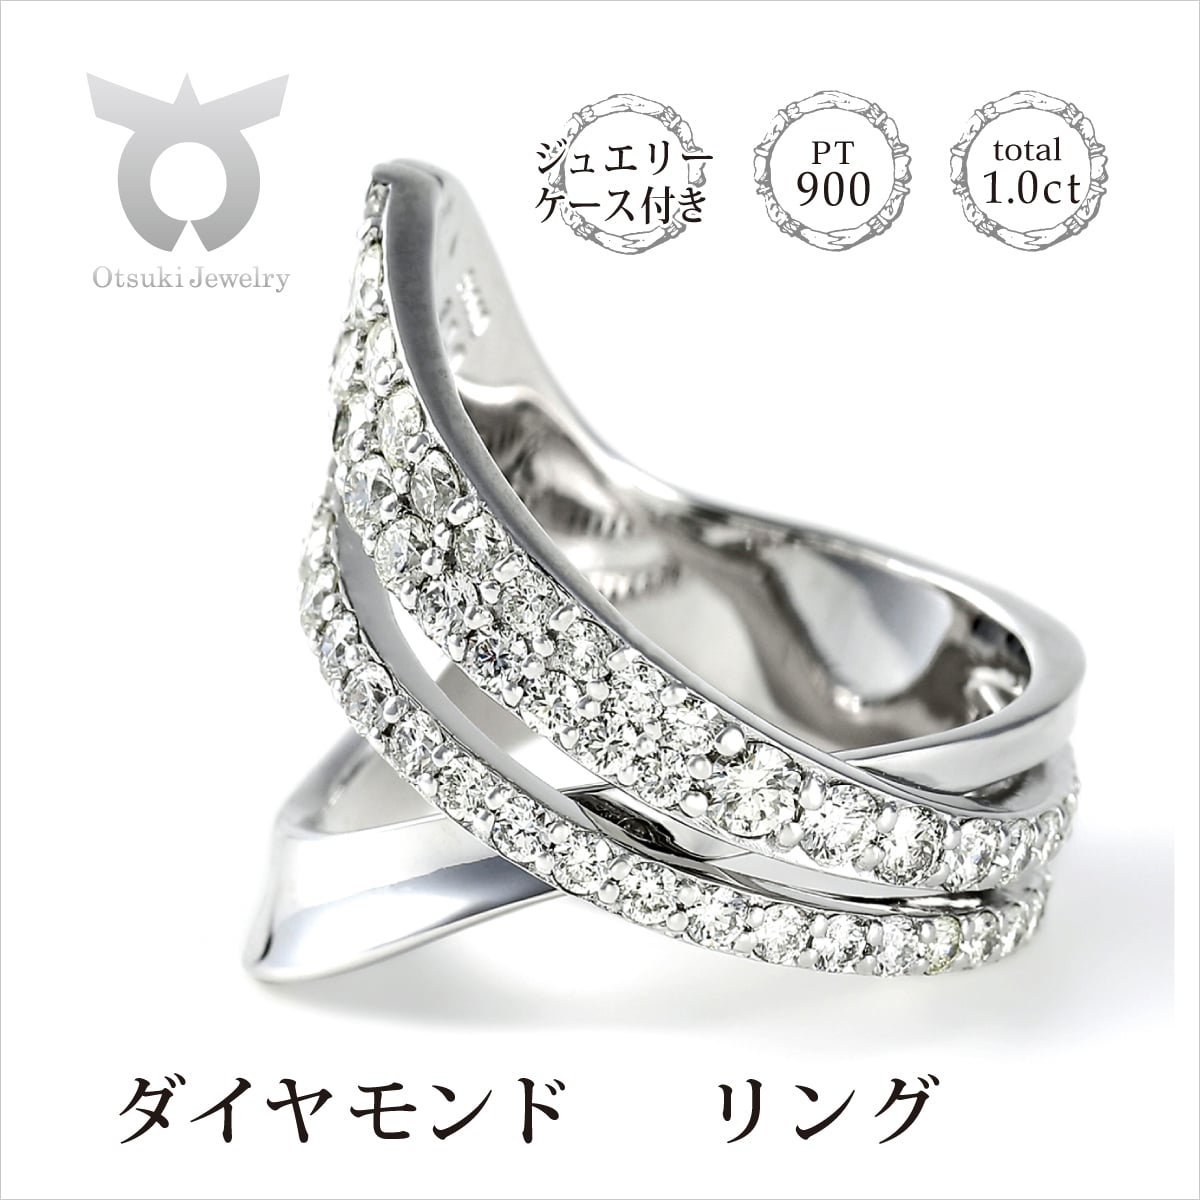 ダイアモンドの指輪/RING/ 0.53 / 0.13 ct.